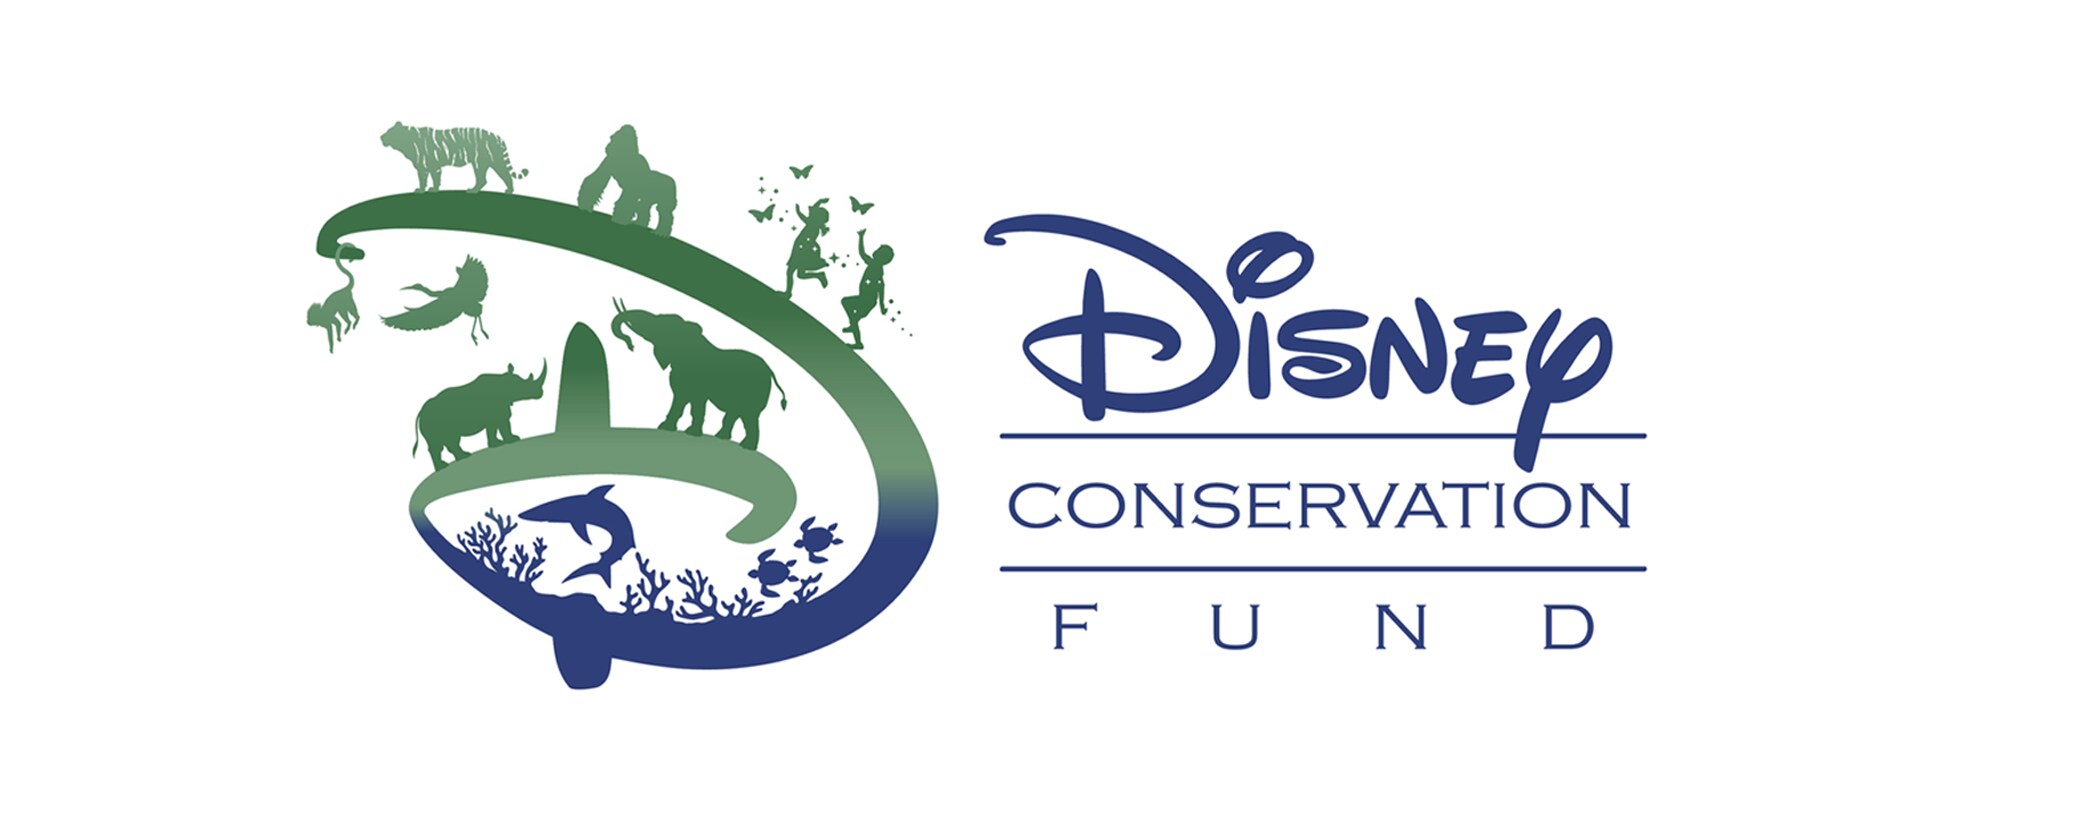 Treze projetos de conservação ambiental na América Latina são premiados pela Disney